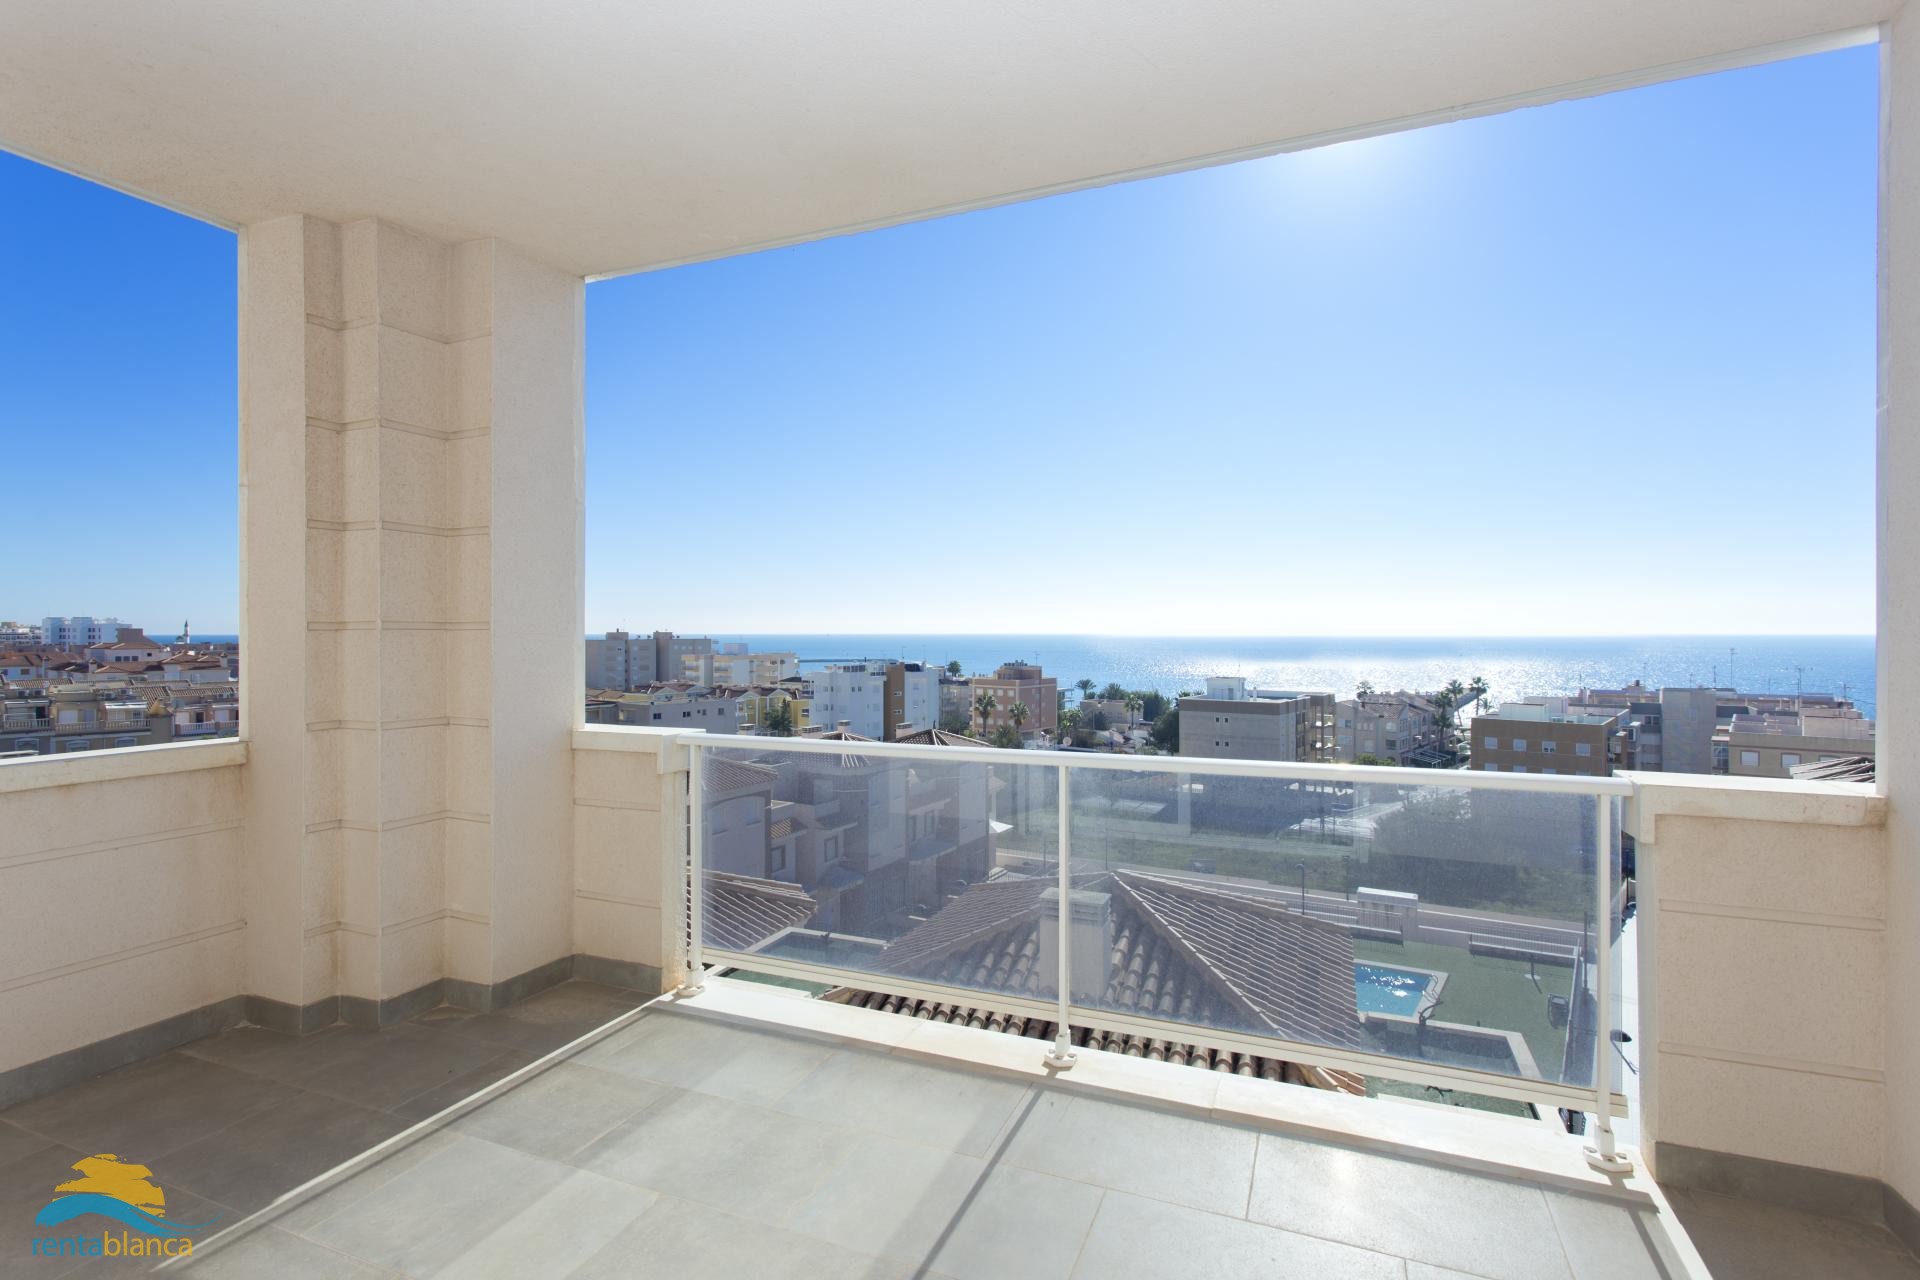 Sea view bungalows & apartments - Santa Pola  - Rentablanca